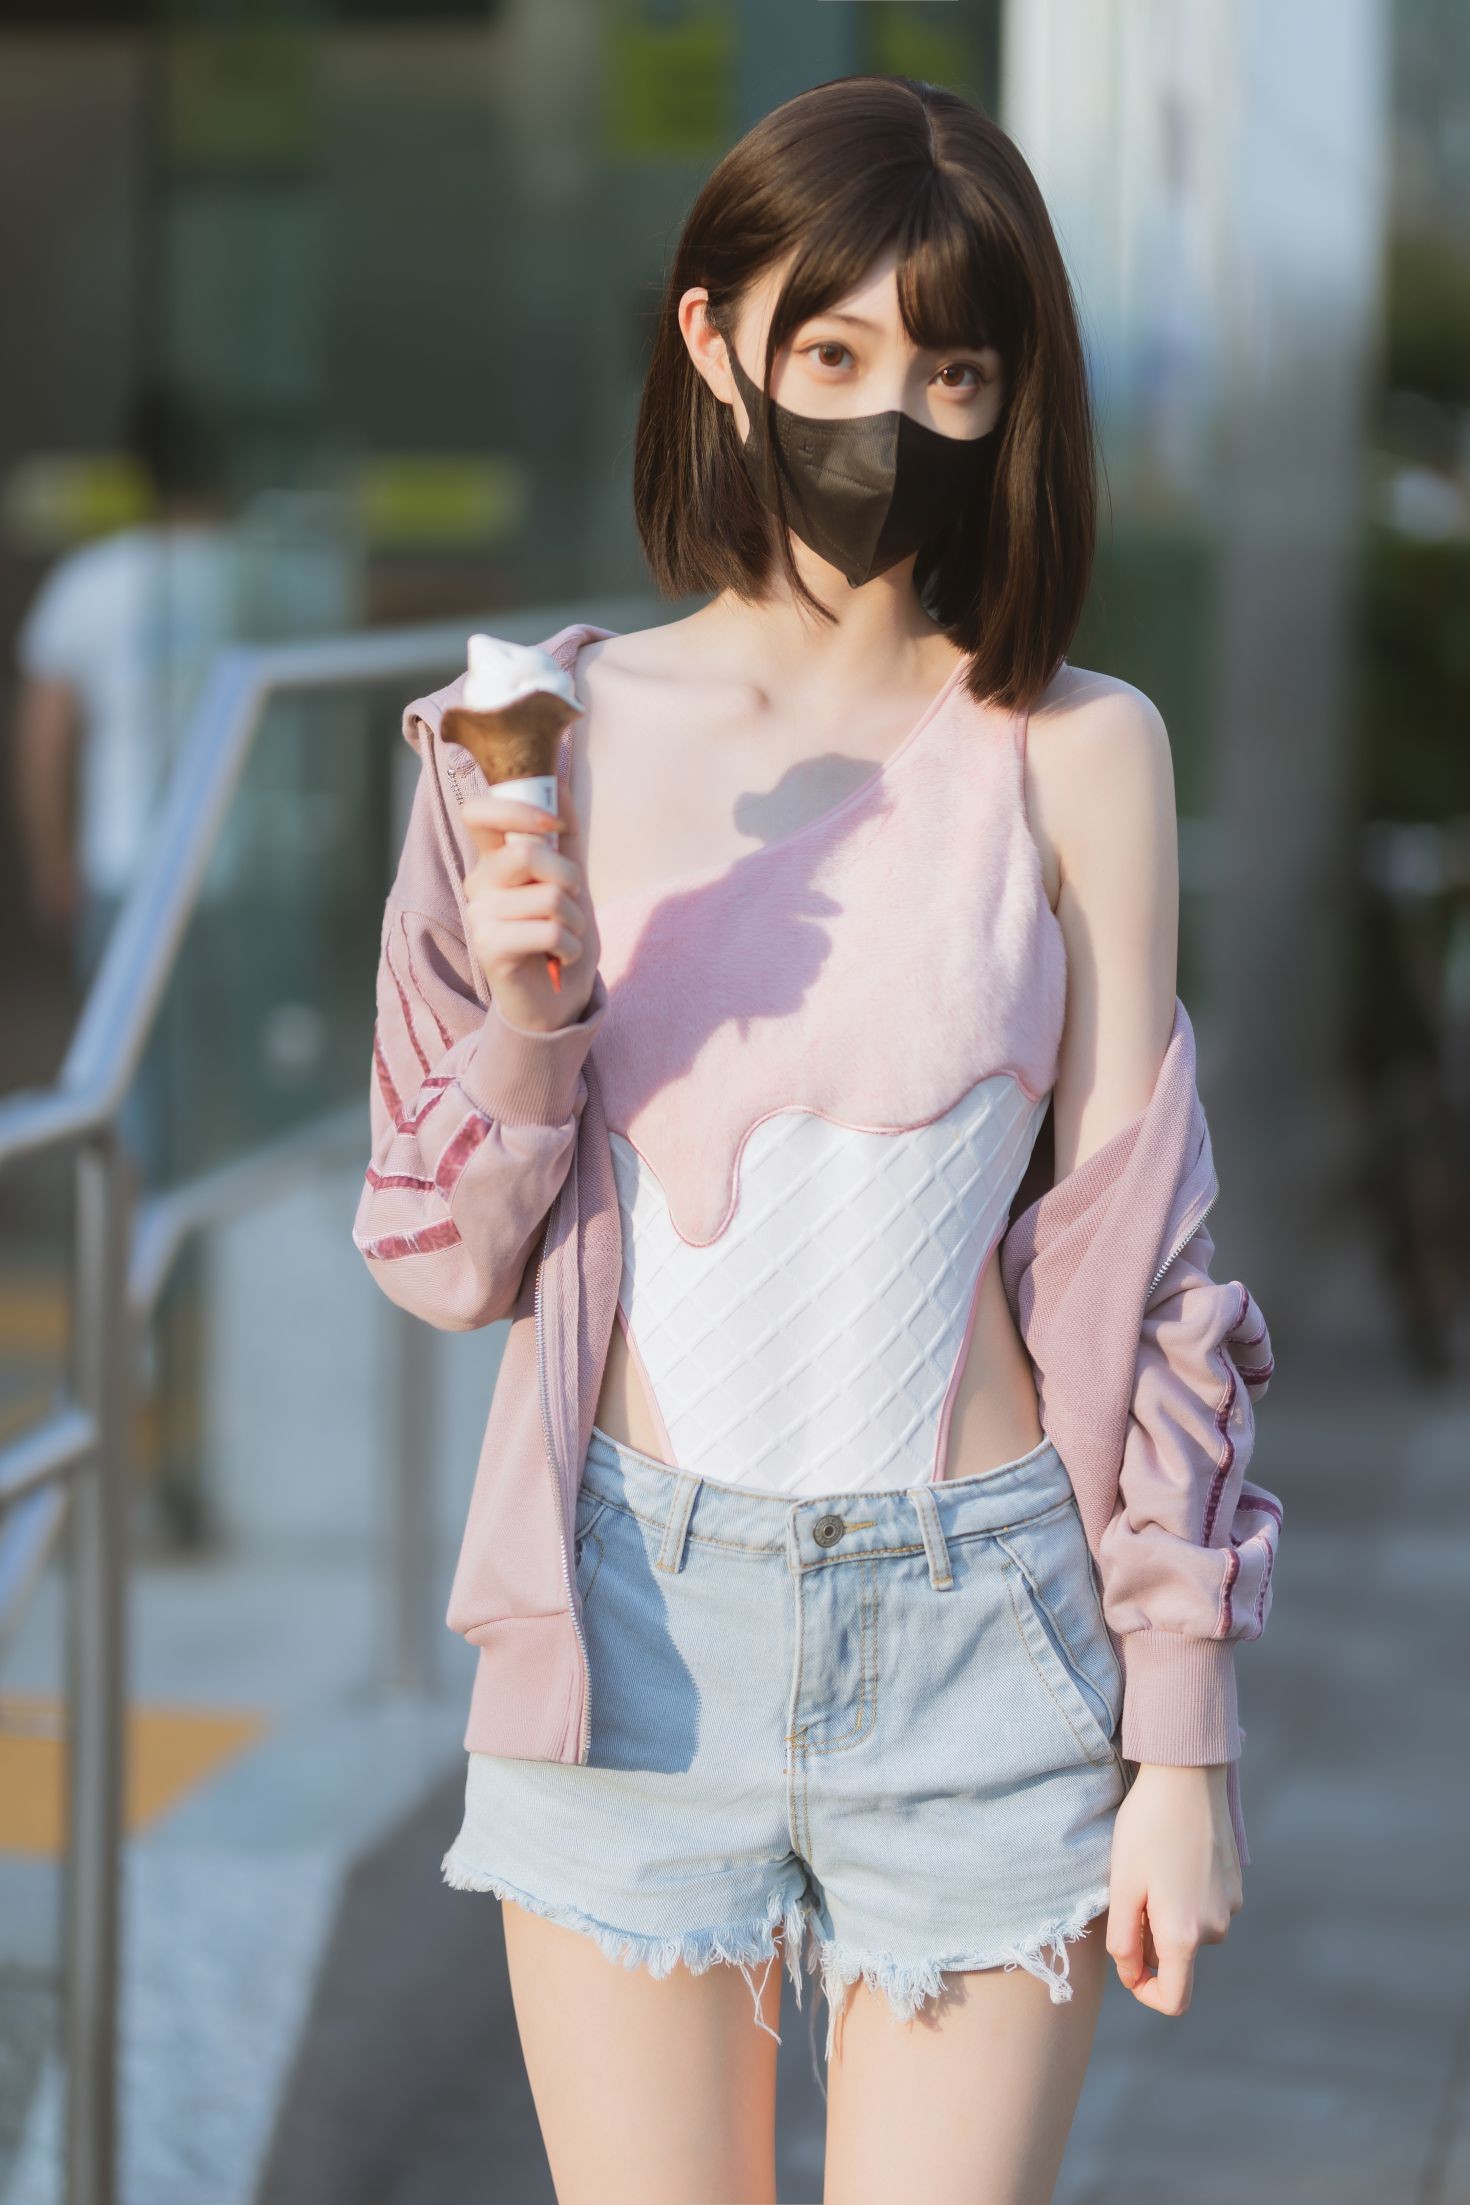 美女动漫博主许岚性感Cosplay写真冰淇淋 (41)